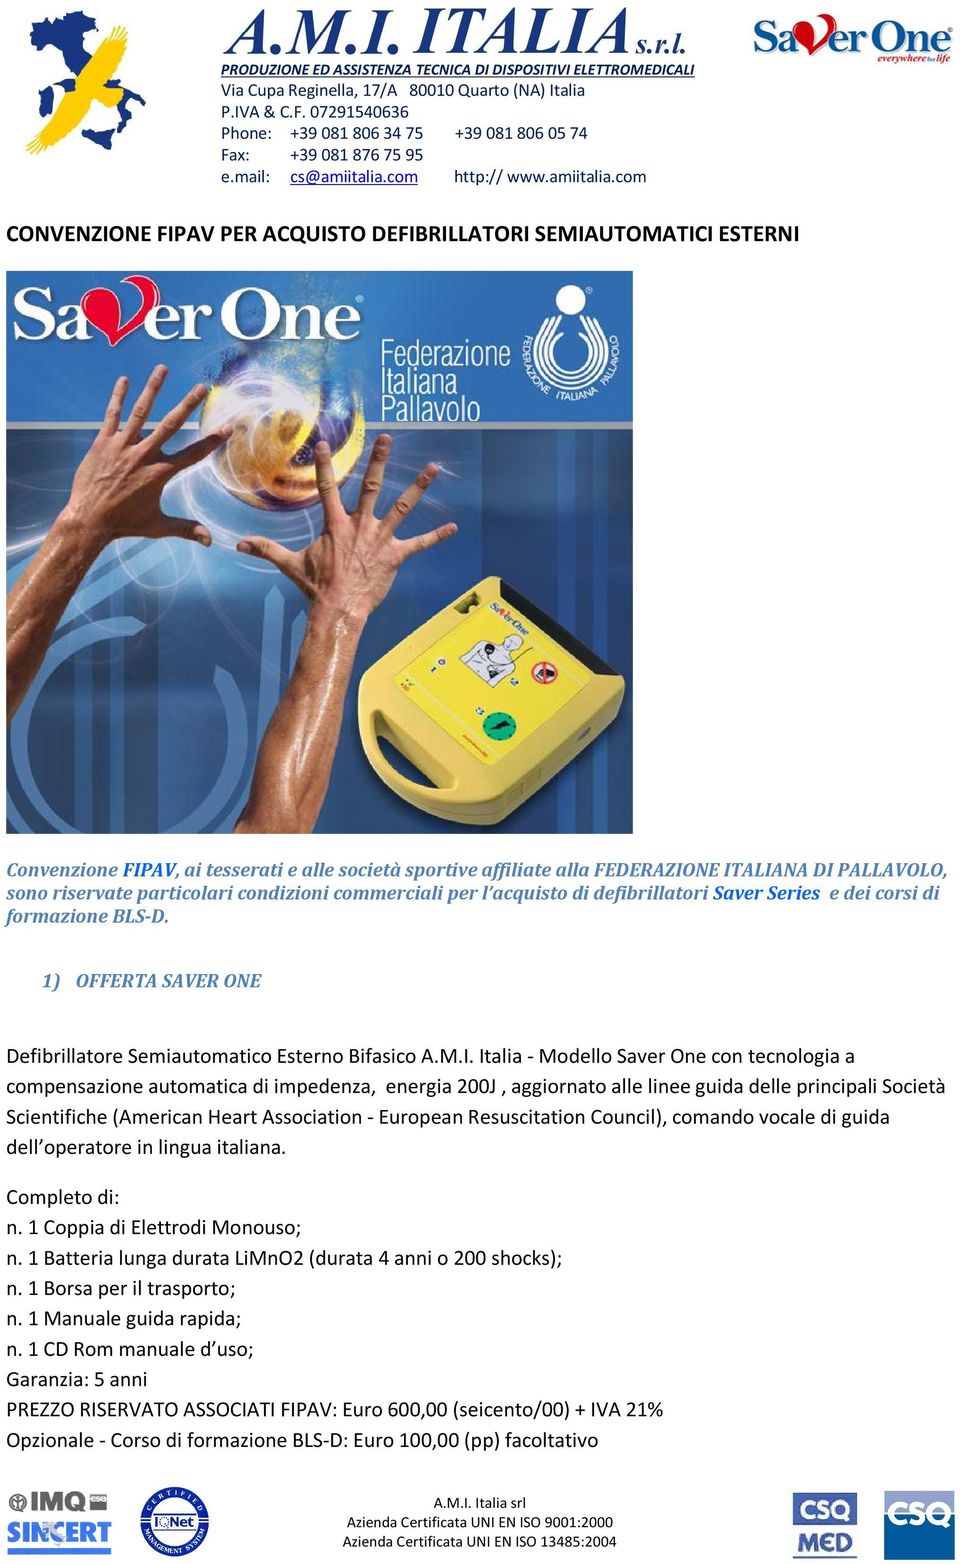 Italia - Modello Saver One con tecnologia a compensazione automatica di impedenza, energia 200J, aggiornato alle linee guida delle principali Società Scientifiche (American Heart Association -